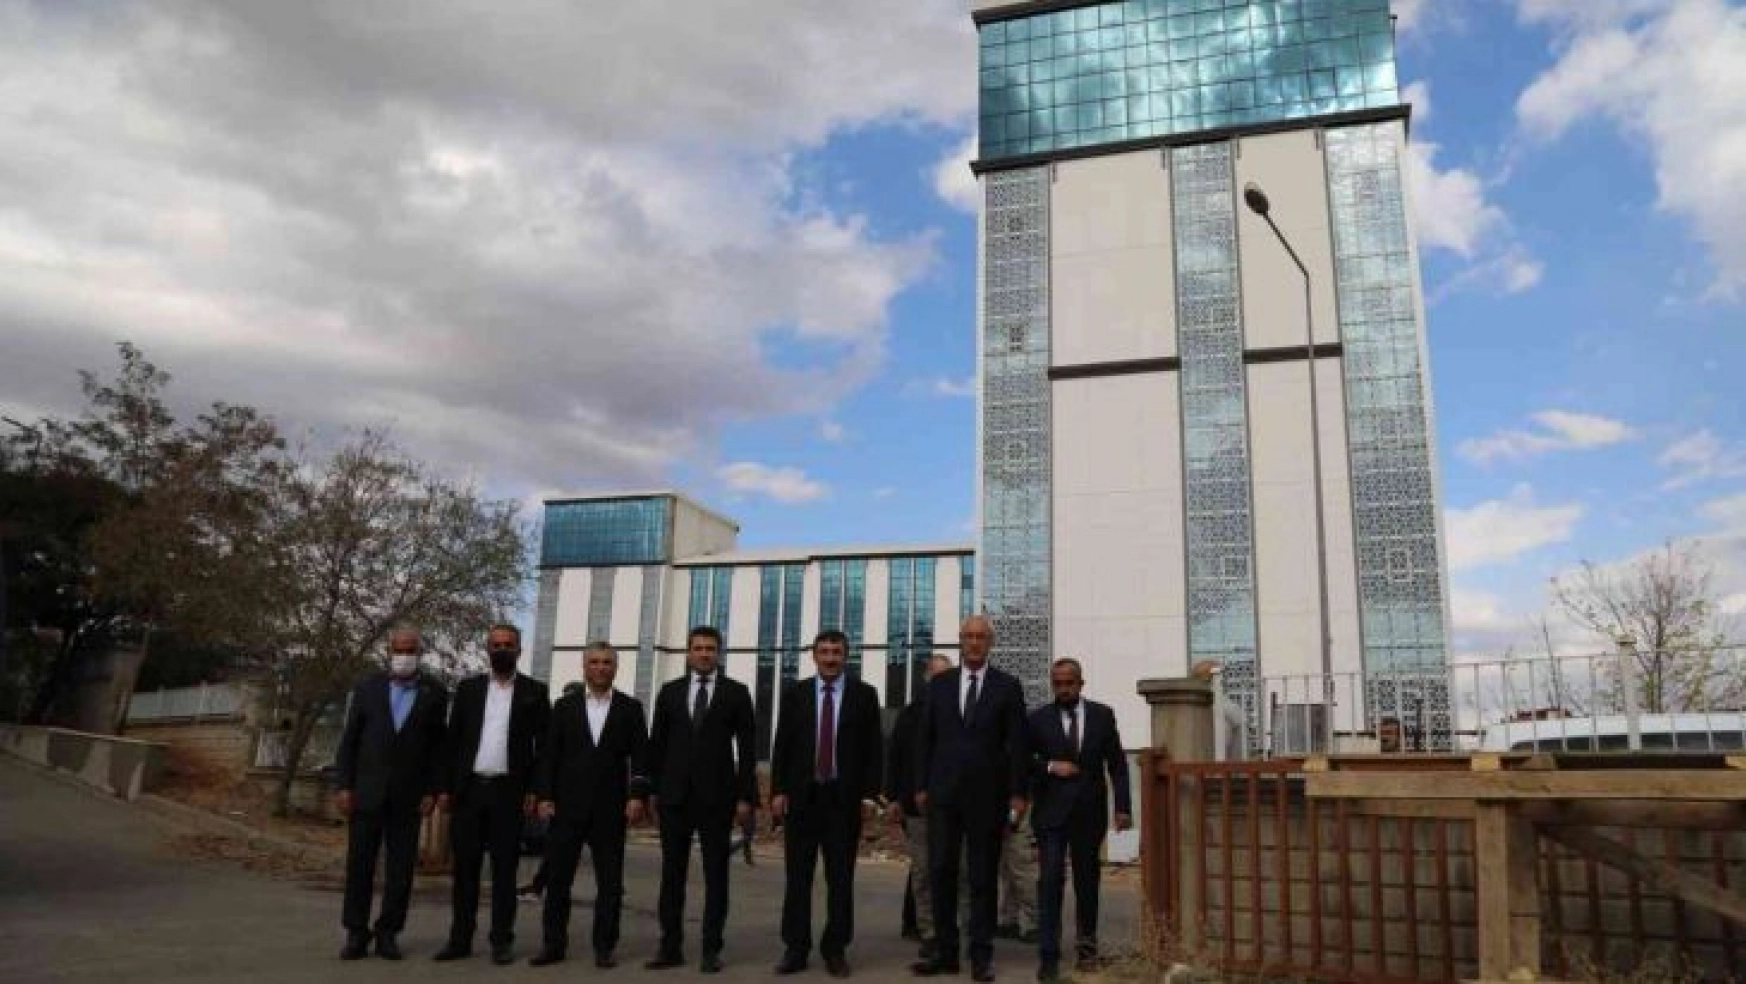 Bingöl Belediyesi yeni hizmet binası büyük oranda tamamlandı